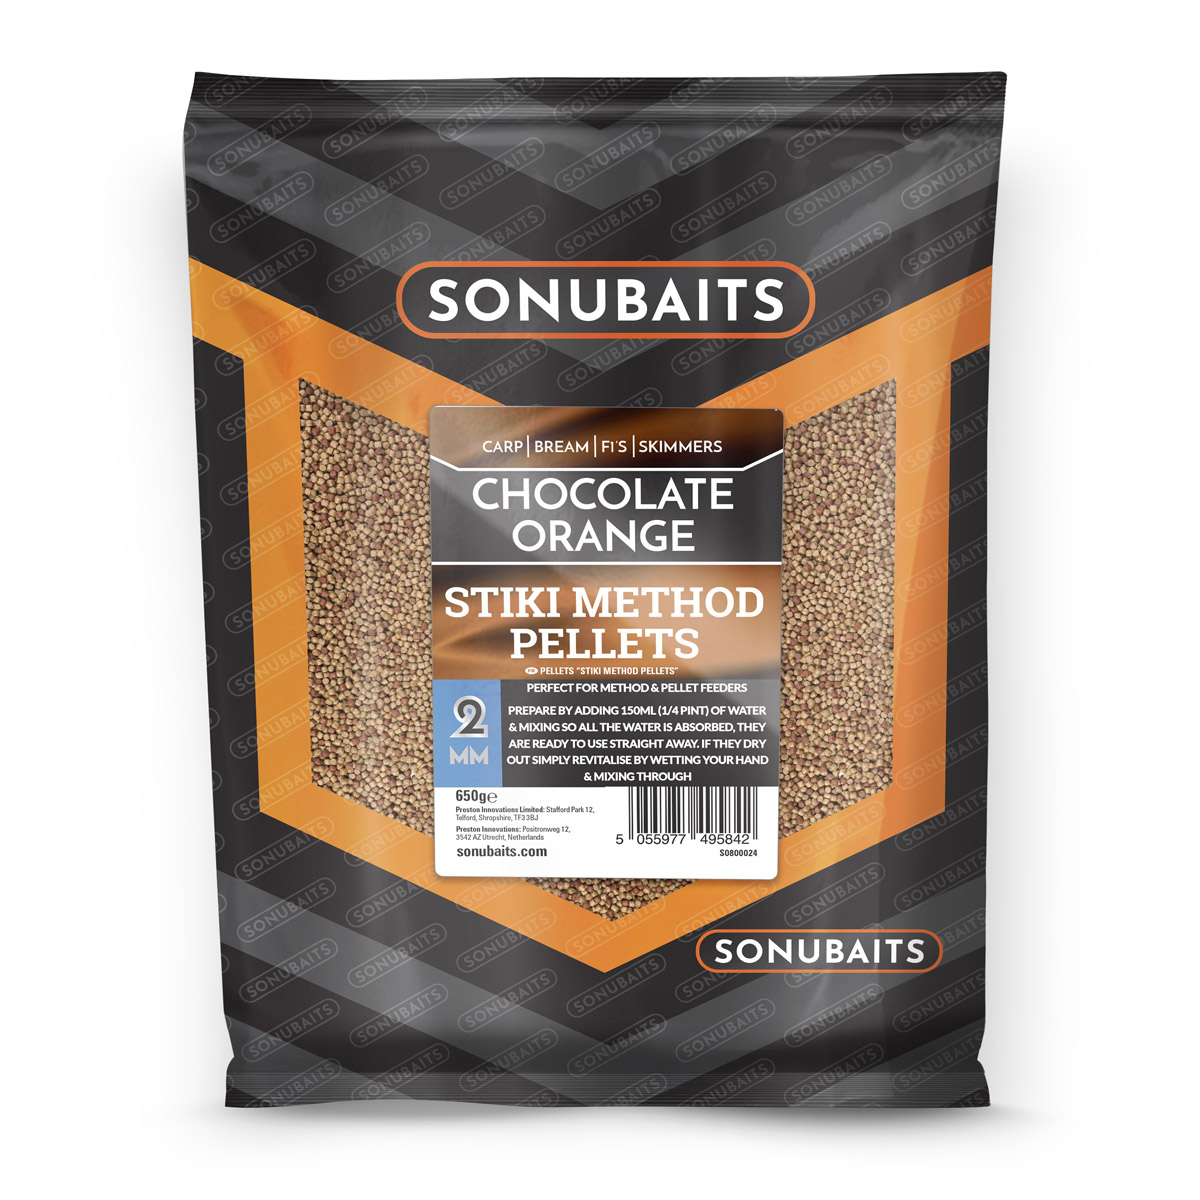 Sonubaits Stiki Chocolate Orange Method Pellets